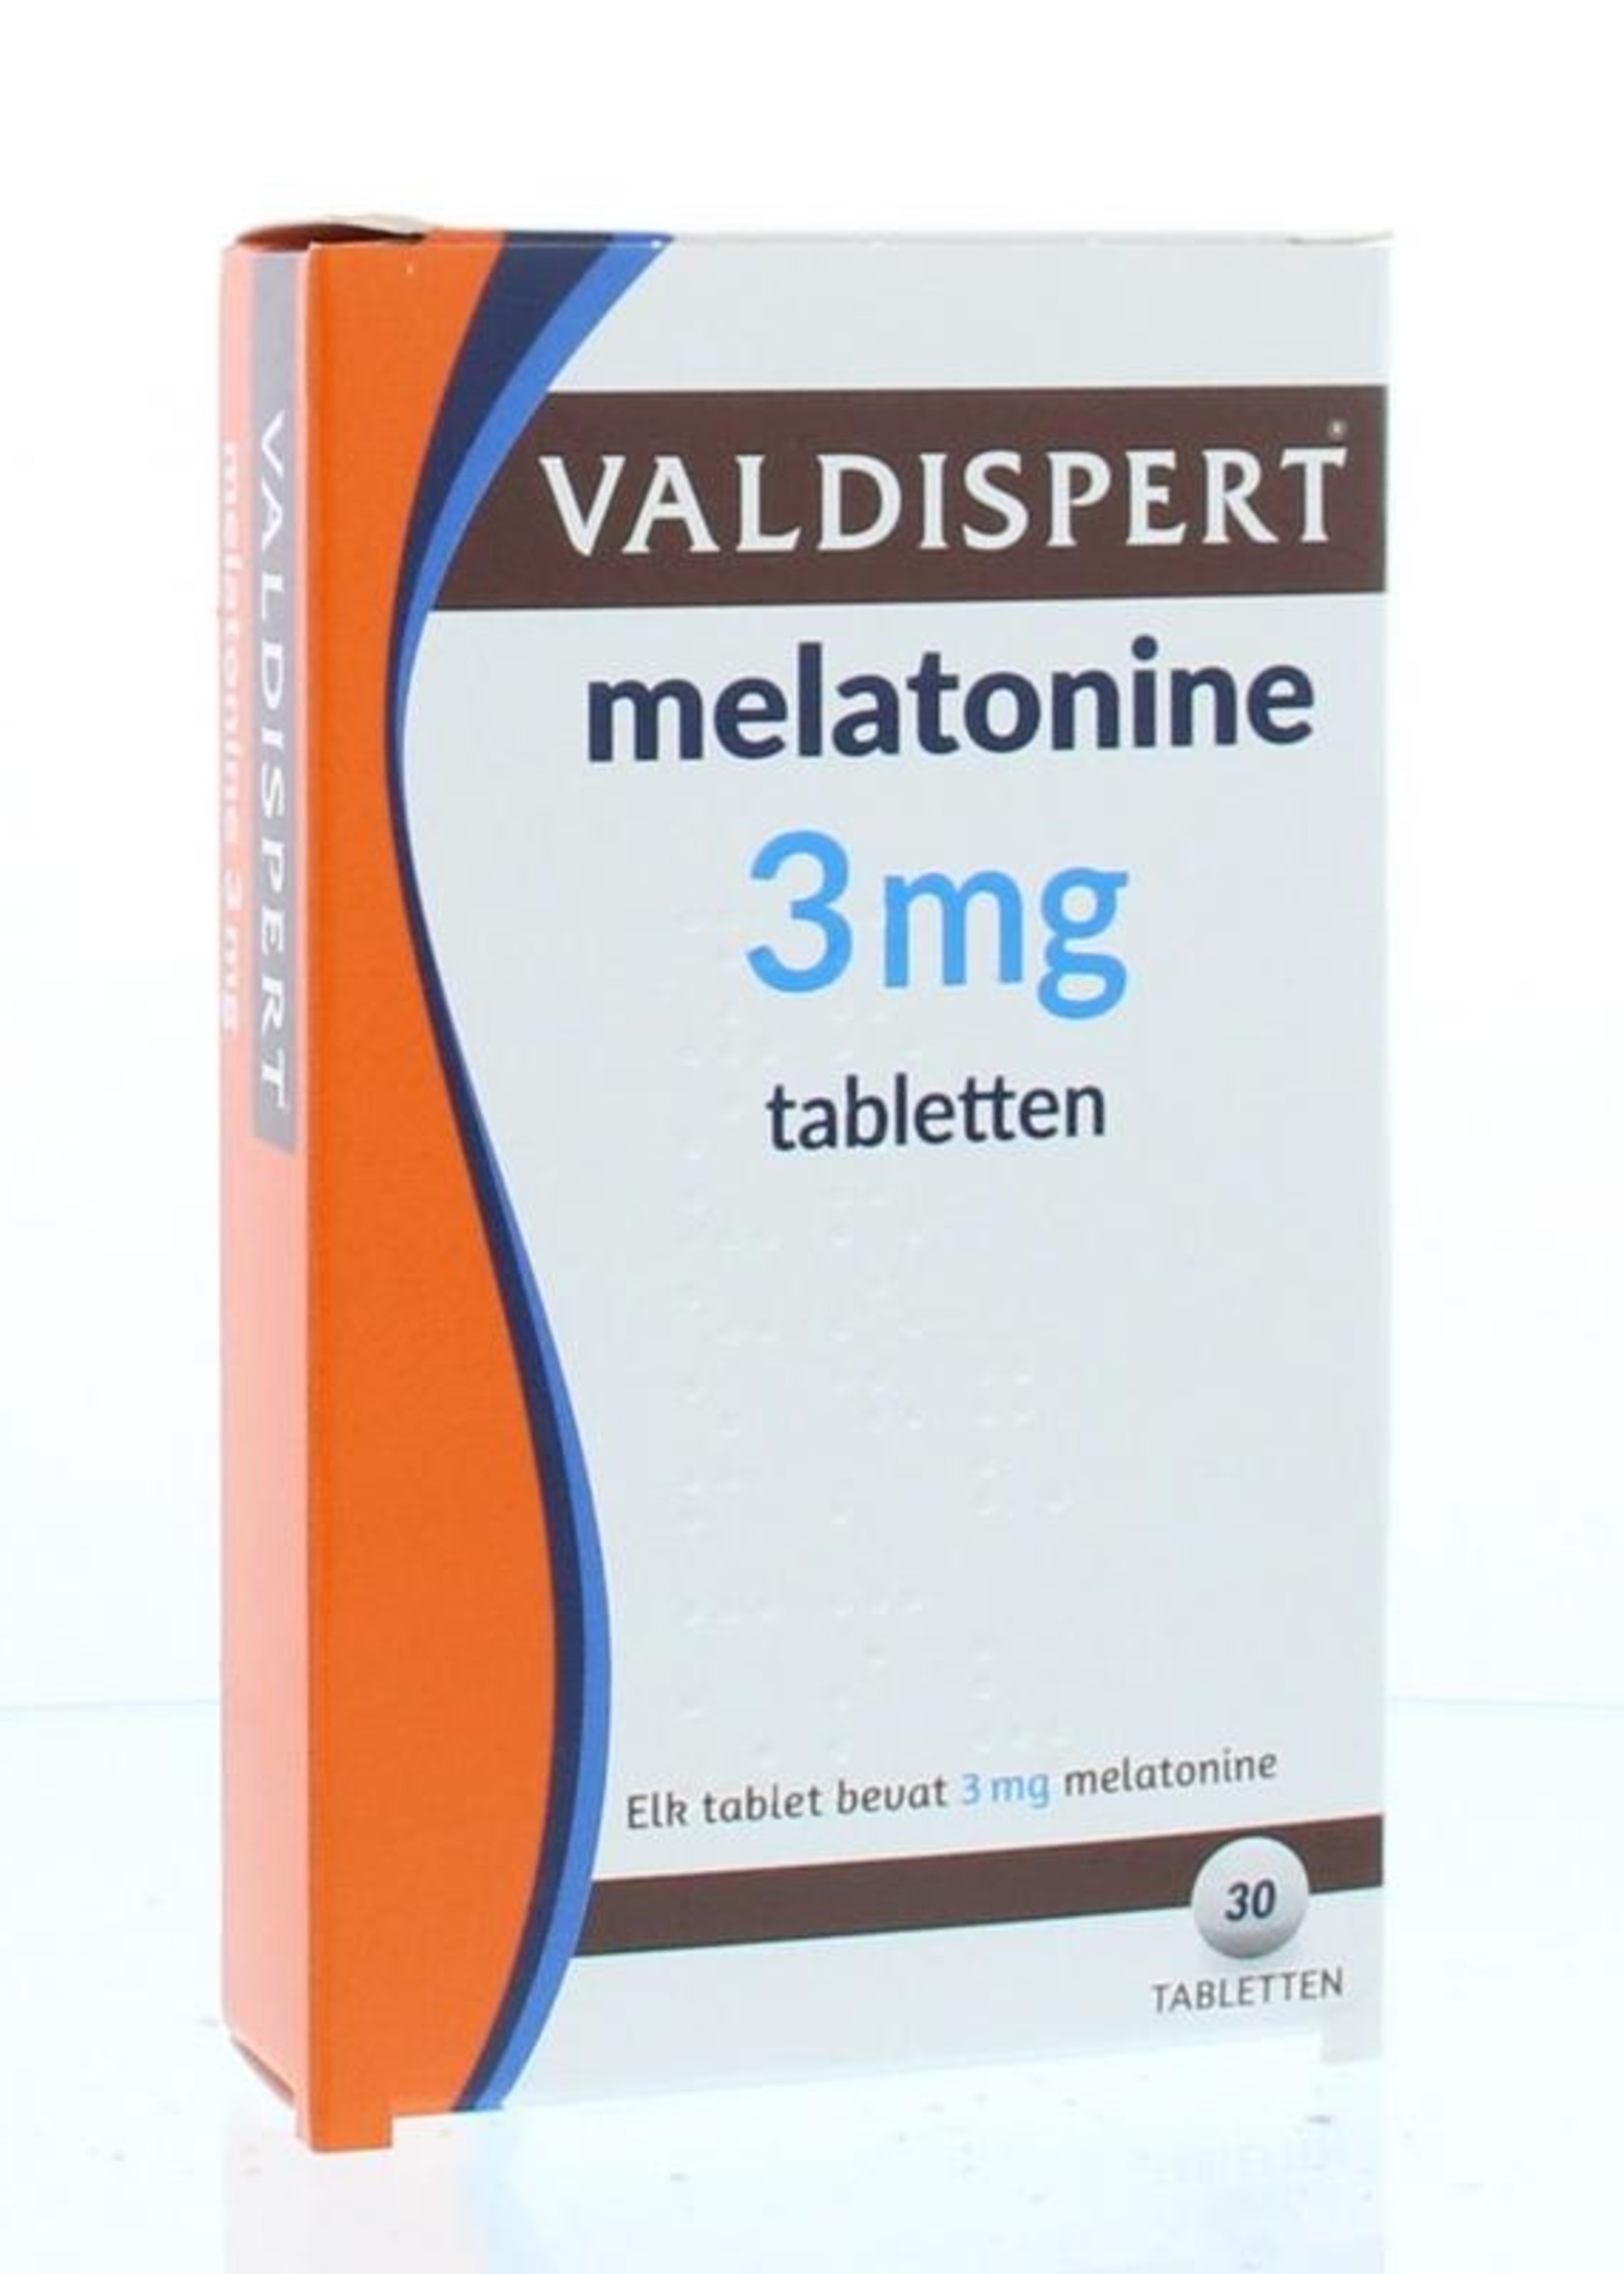 Valdispert Melatonine 3mg 30 Tabletten